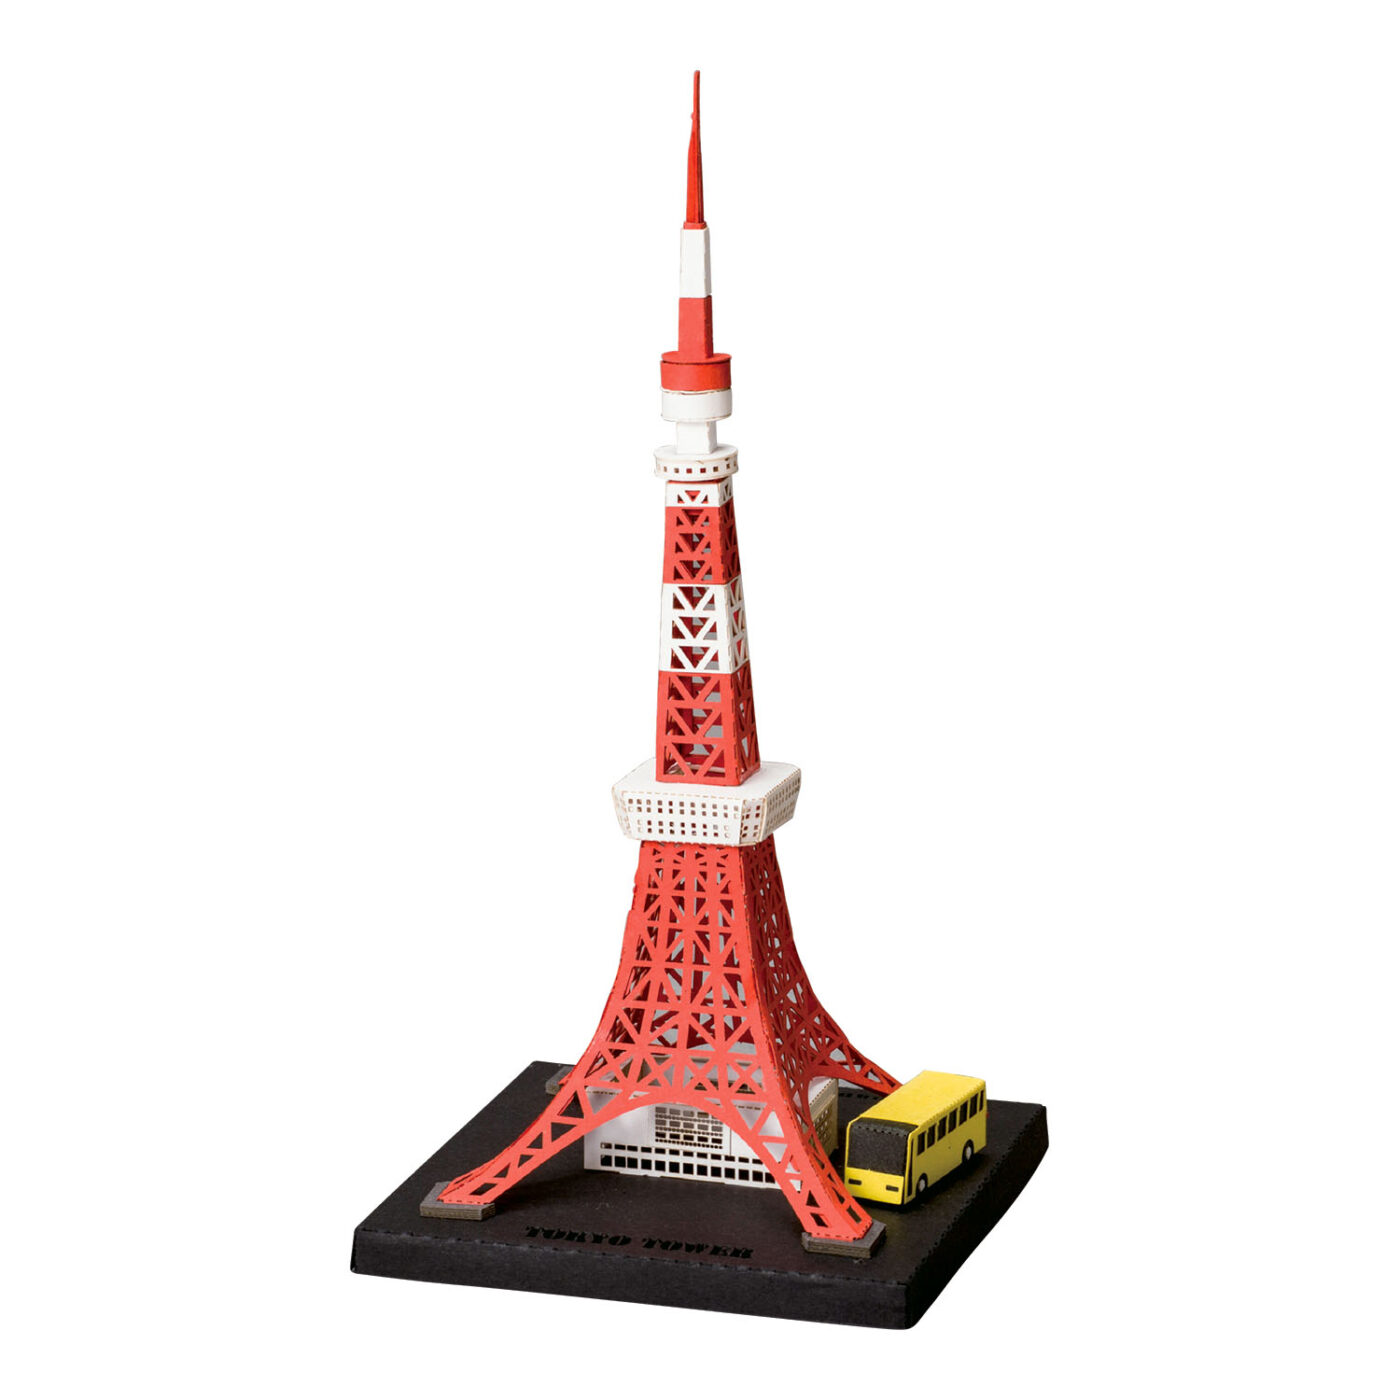 東京タワーの商品画像